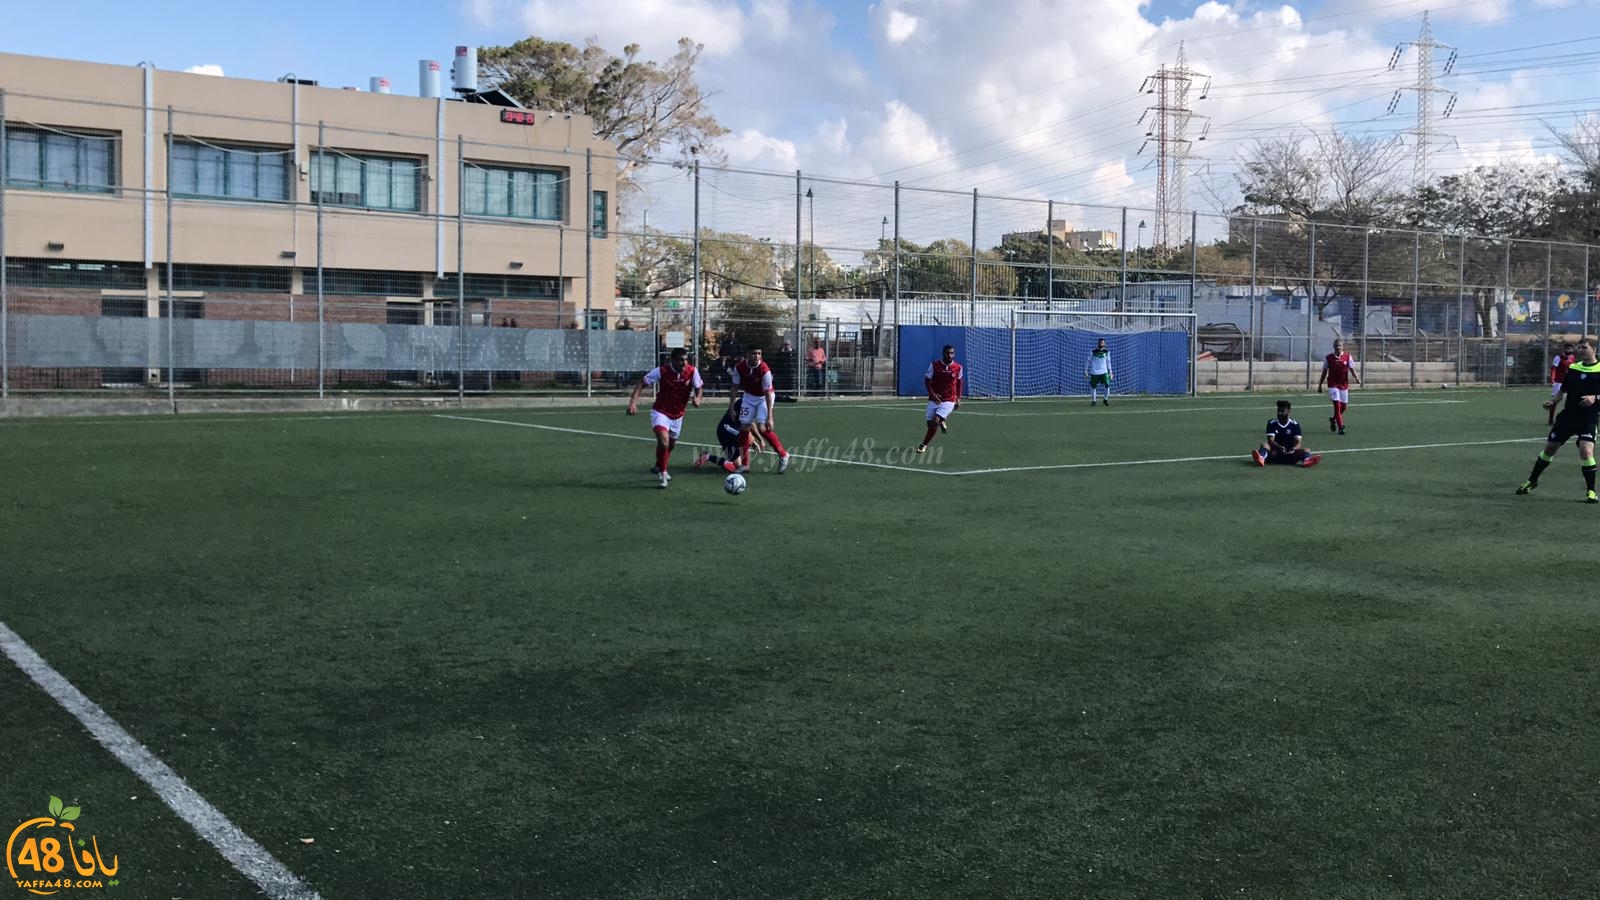   بالفيديو: فريق أبناء يافا يخسر أمام فريق الوحدة جت بنتيجة 3-1